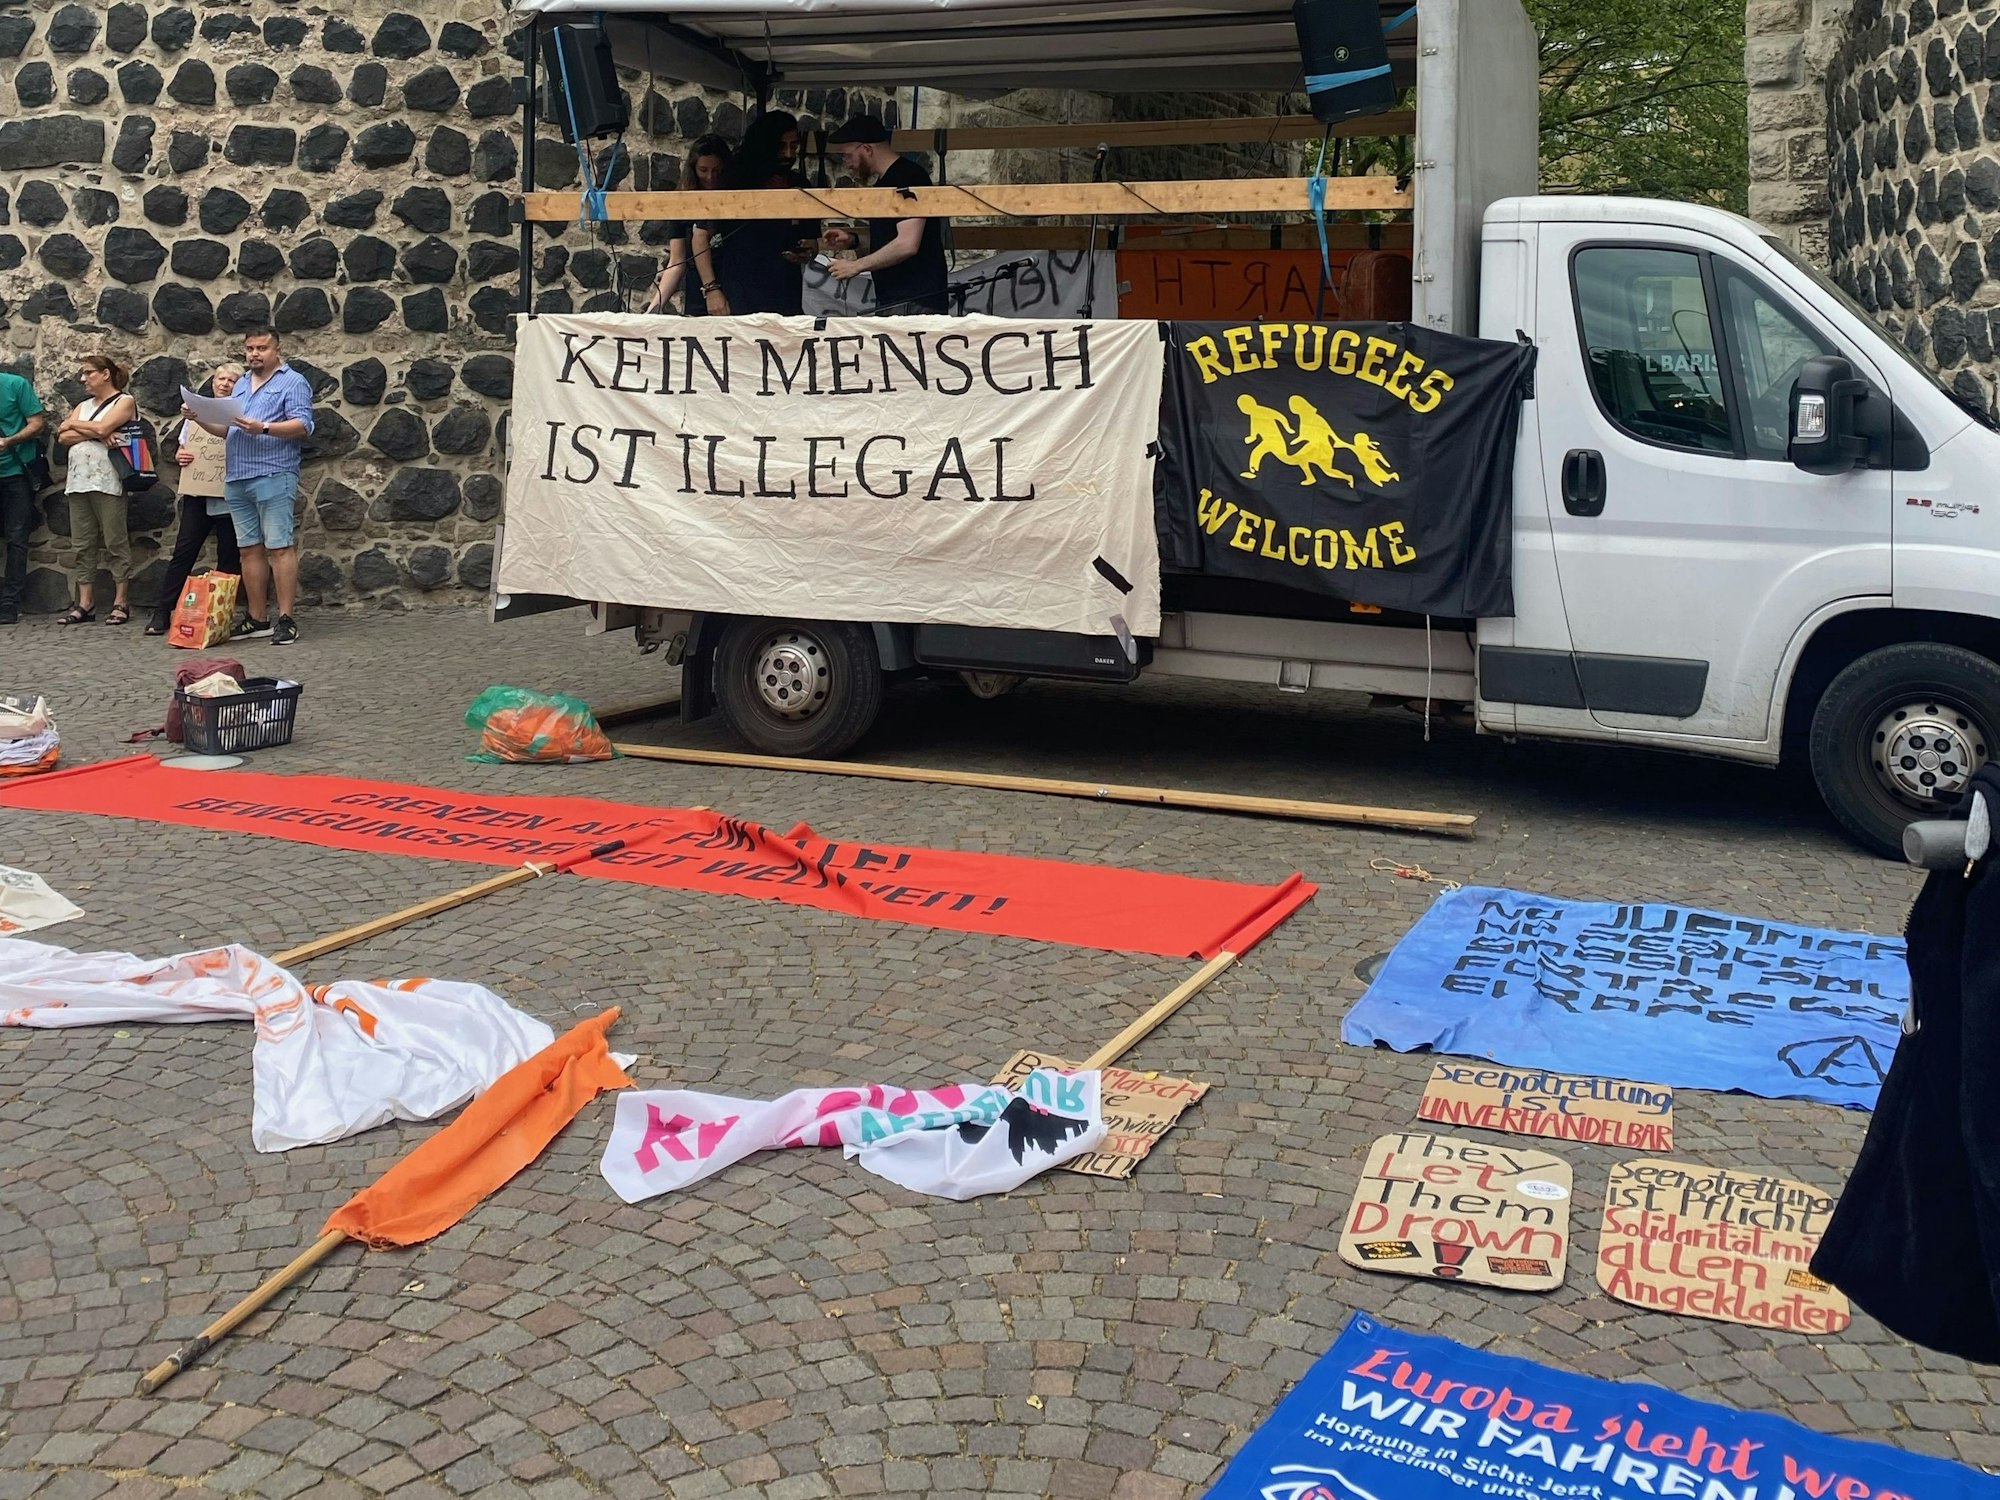 Demo der Seebrücke in Köln zum Weltgeflüchtetentag.